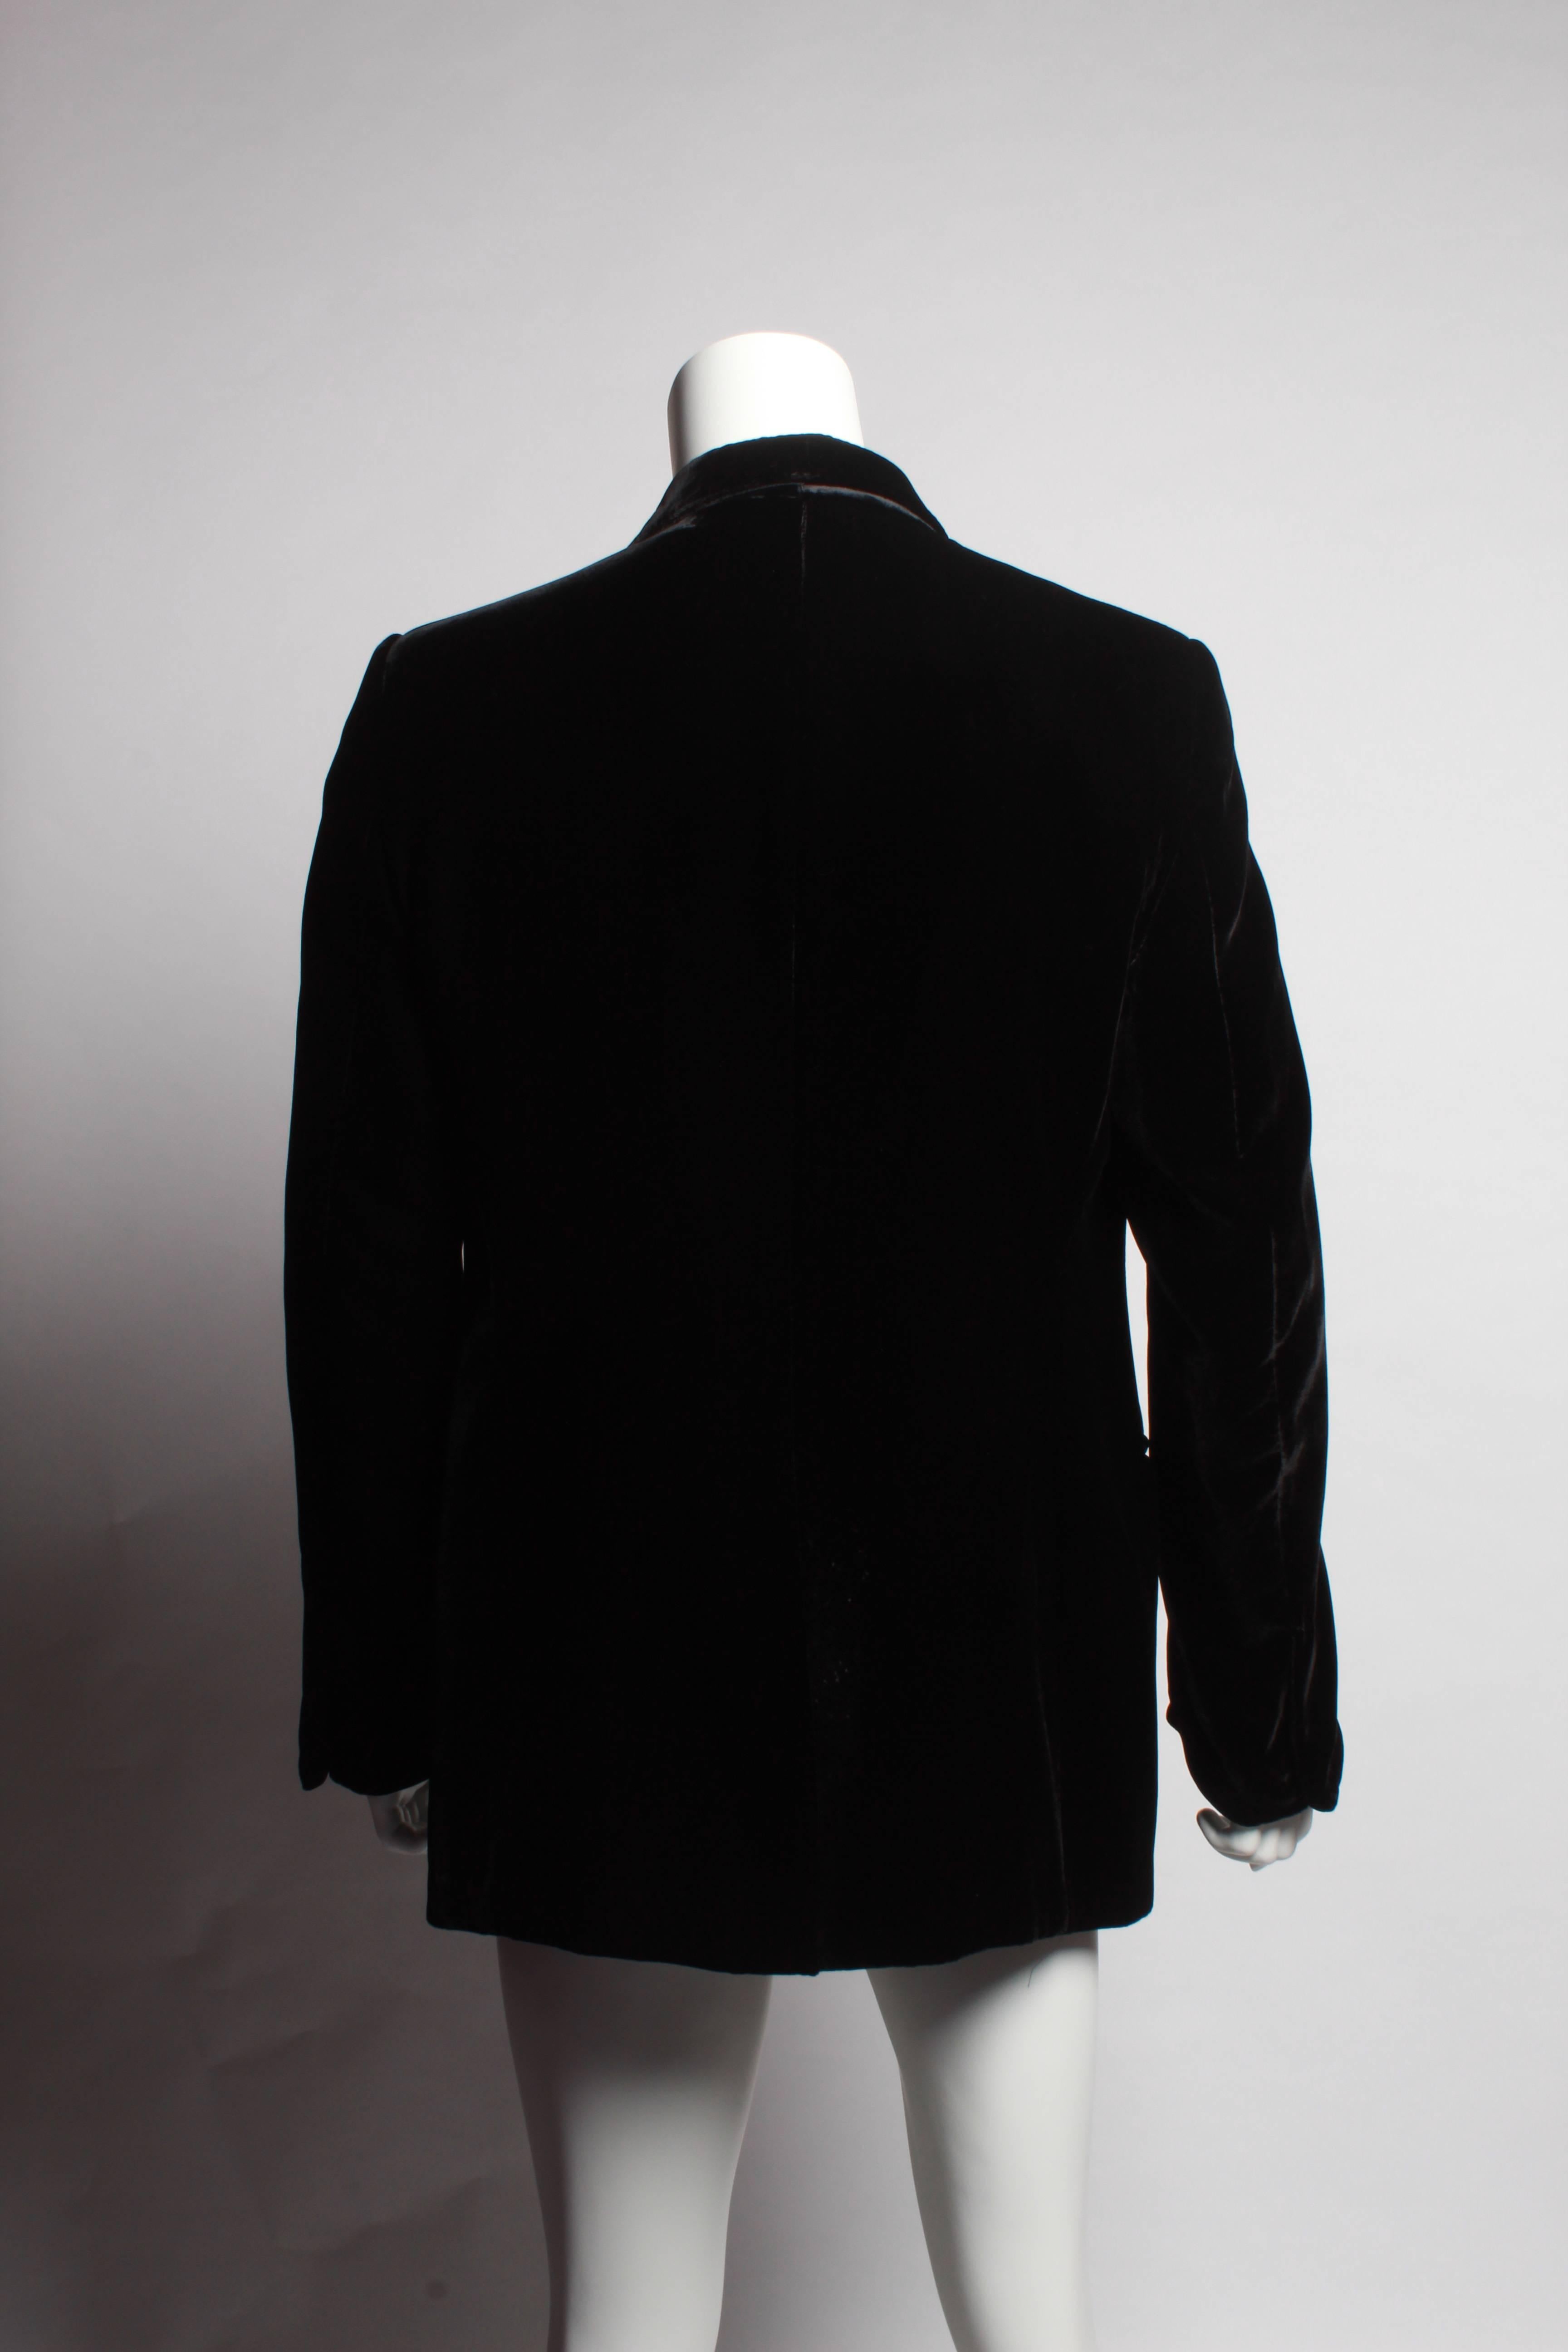 Men's TOM FORD evening cocktail jacket in Black Liquid Silk Velvet